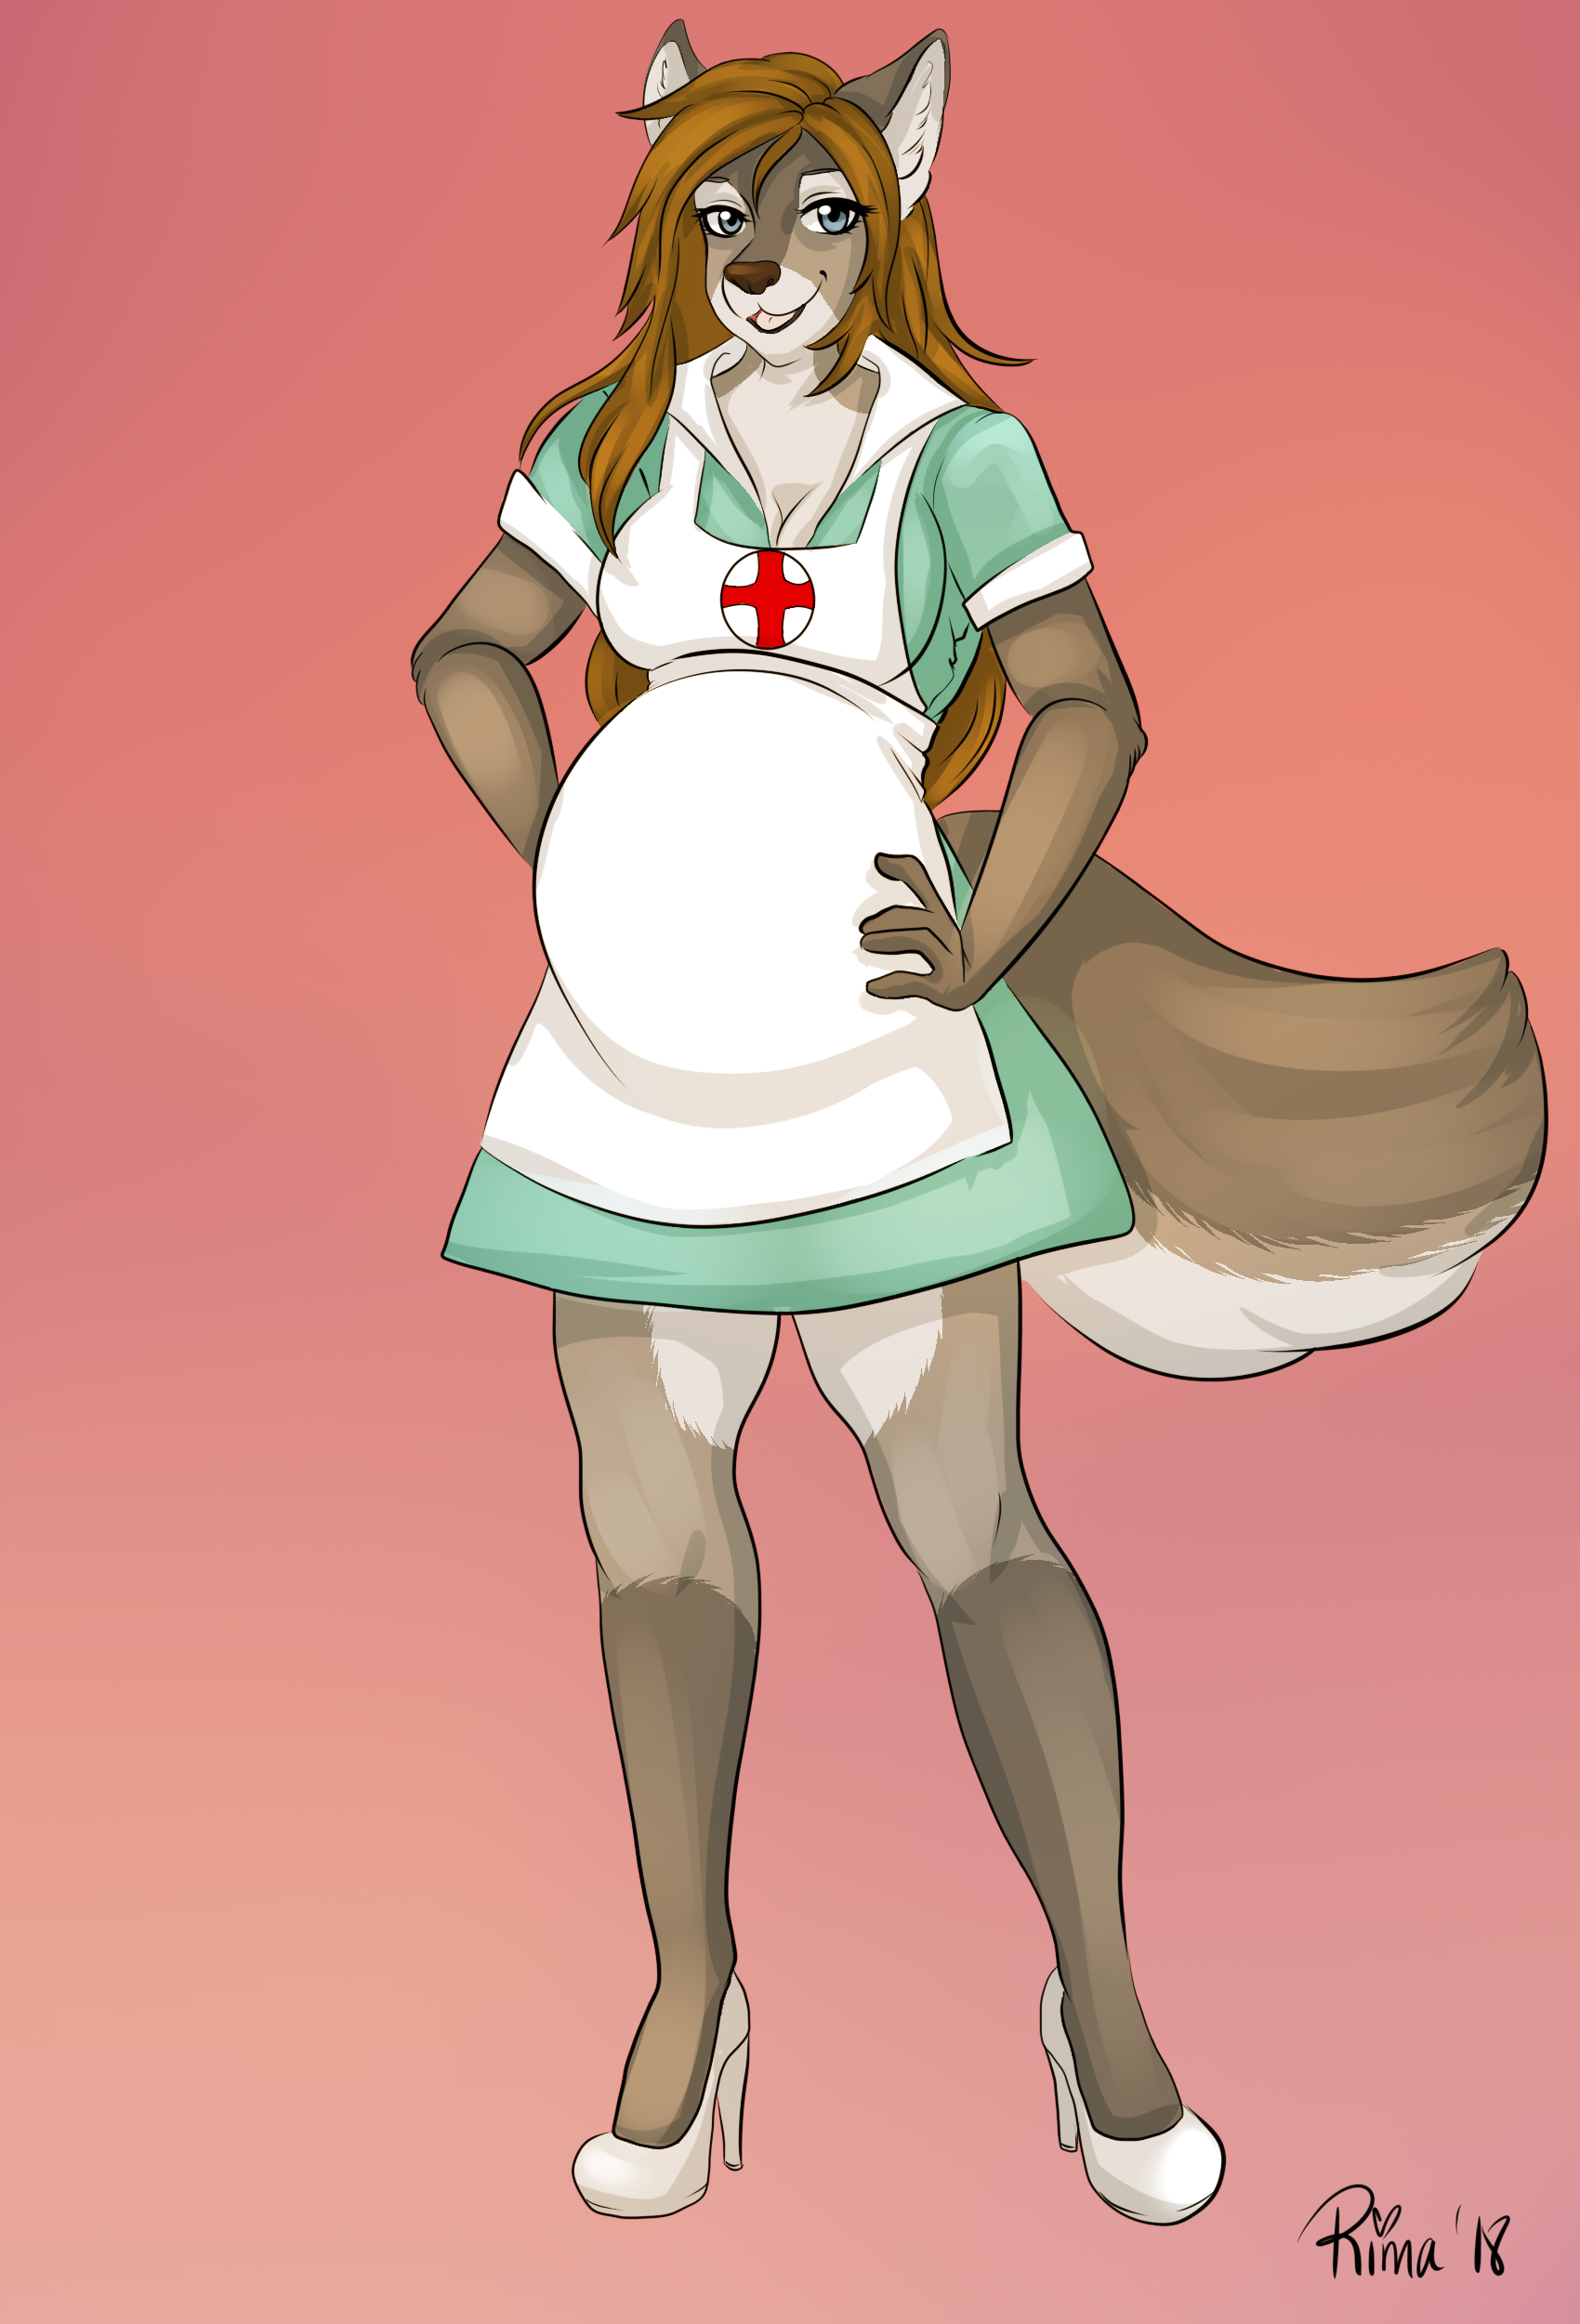 well, hellooooo nurse! : OriginalCharacters